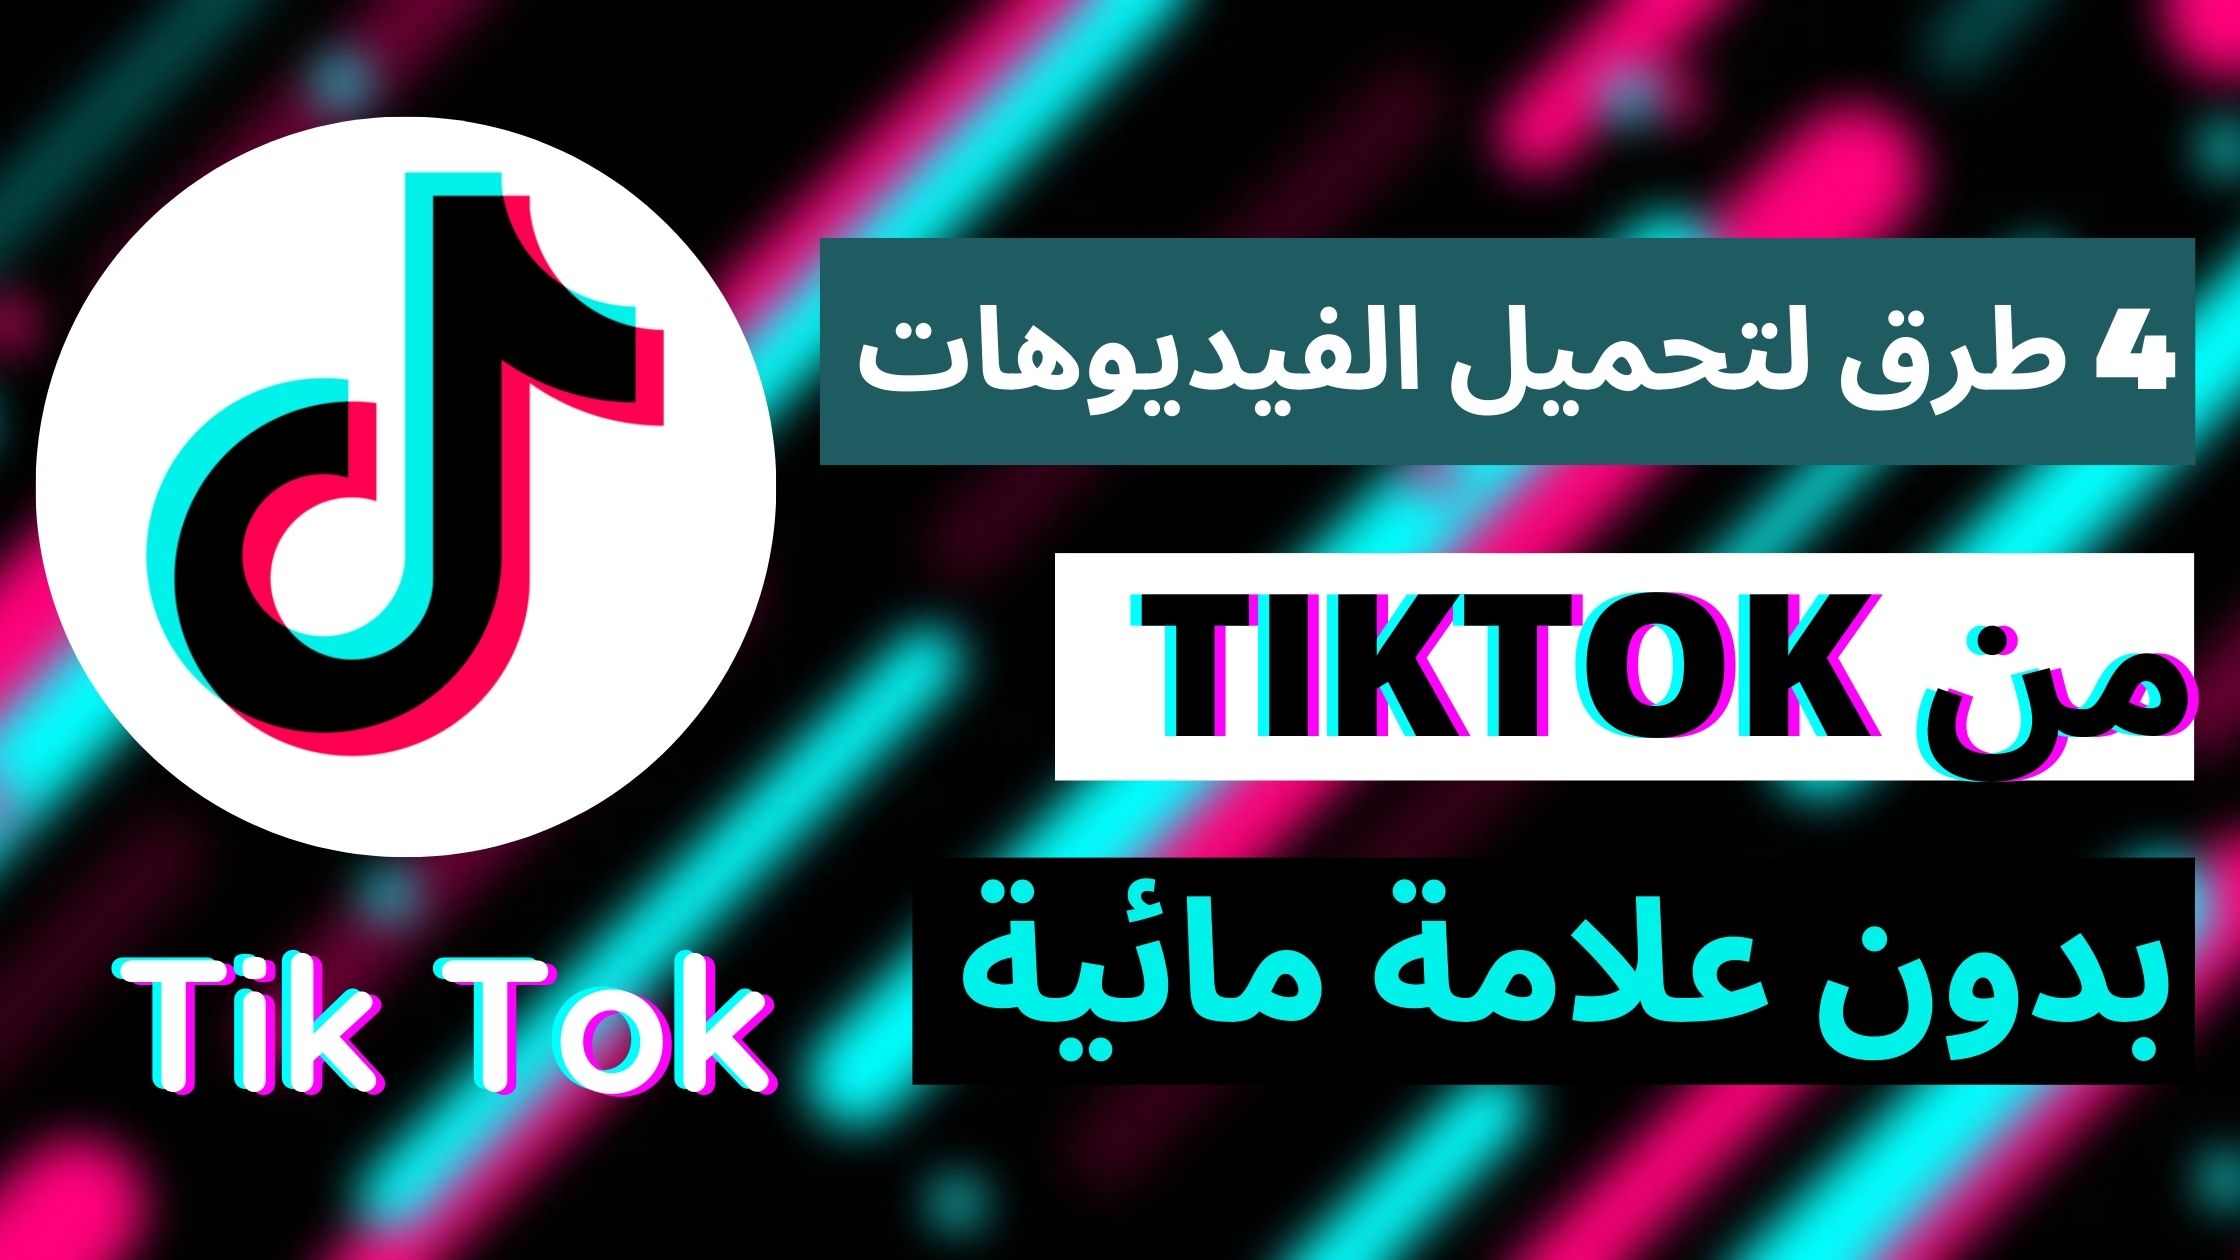 تنزيل مقاطع تيك توك TikTok في 4 خطوات بسيطة!